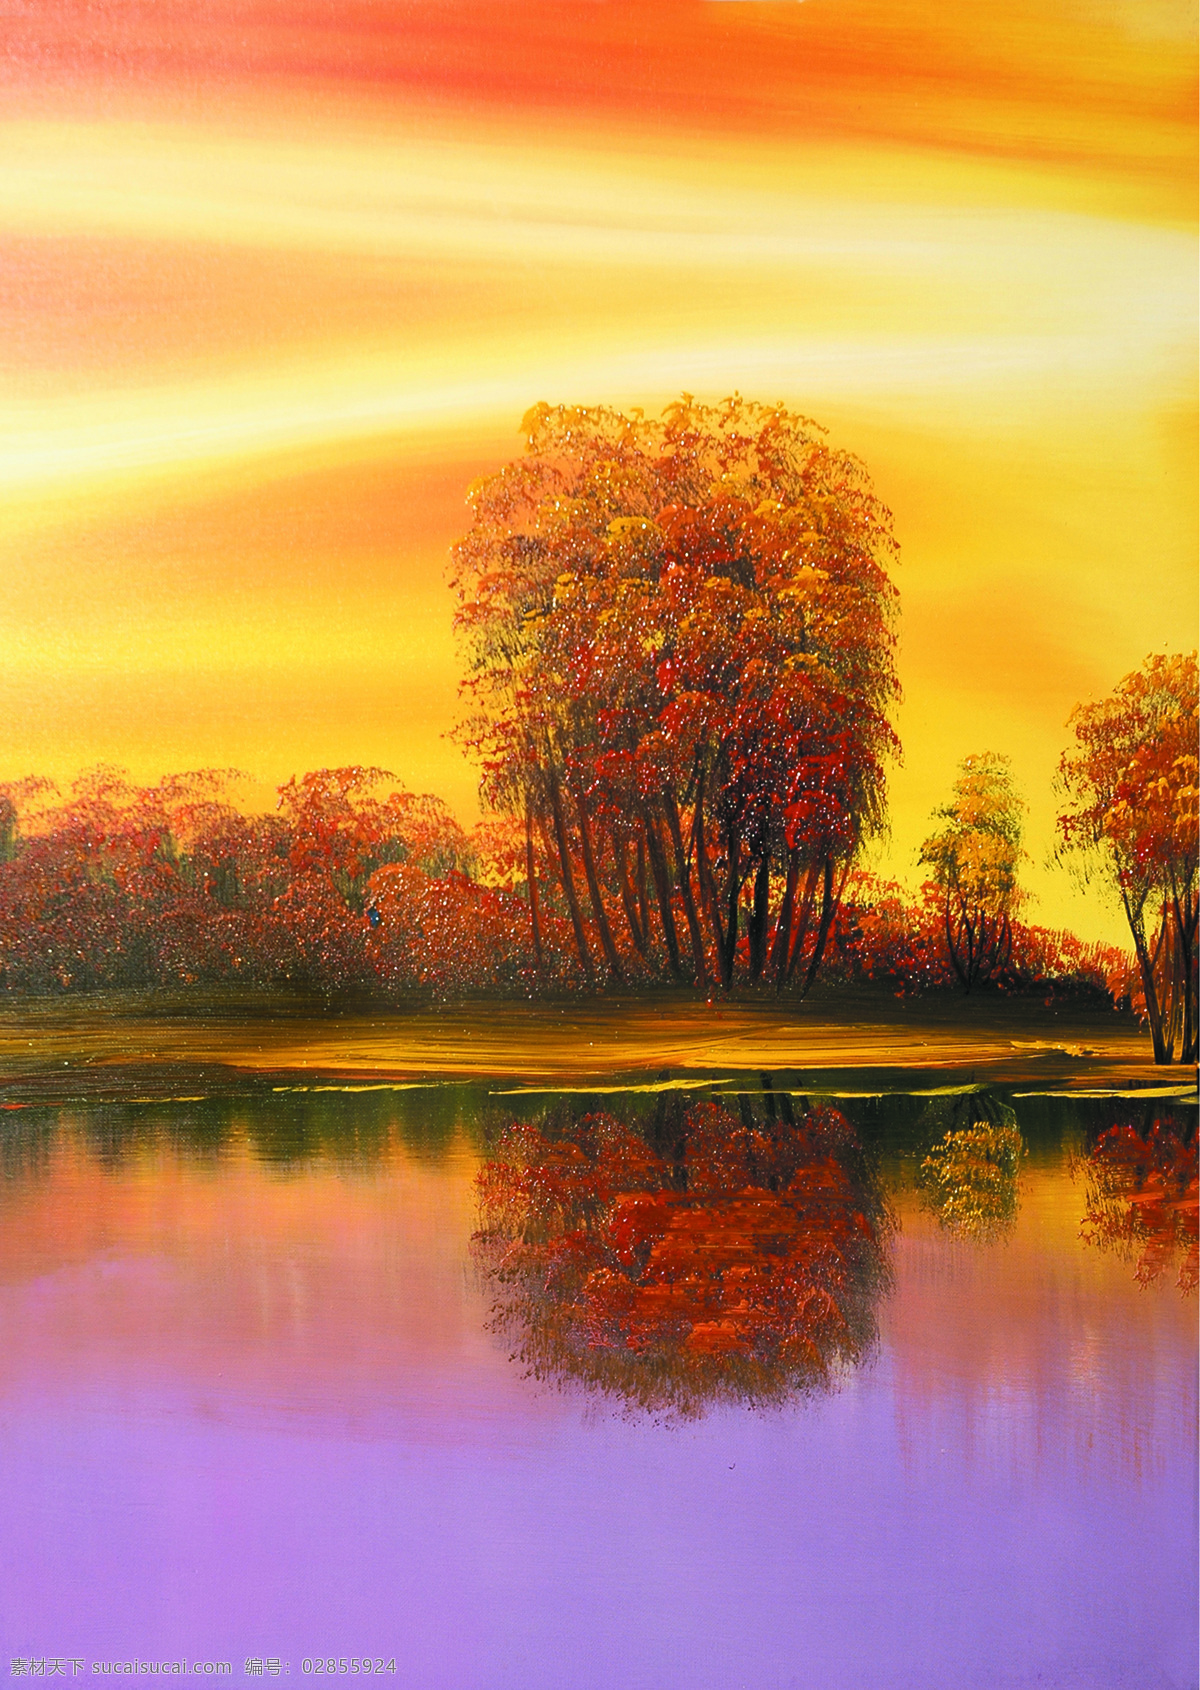 美丽 树木 湖 景 湖景 油画 绘画 艺术 写生 水墨 花草 画 水墨画 风景 其他艺术 文化艺术 黄色